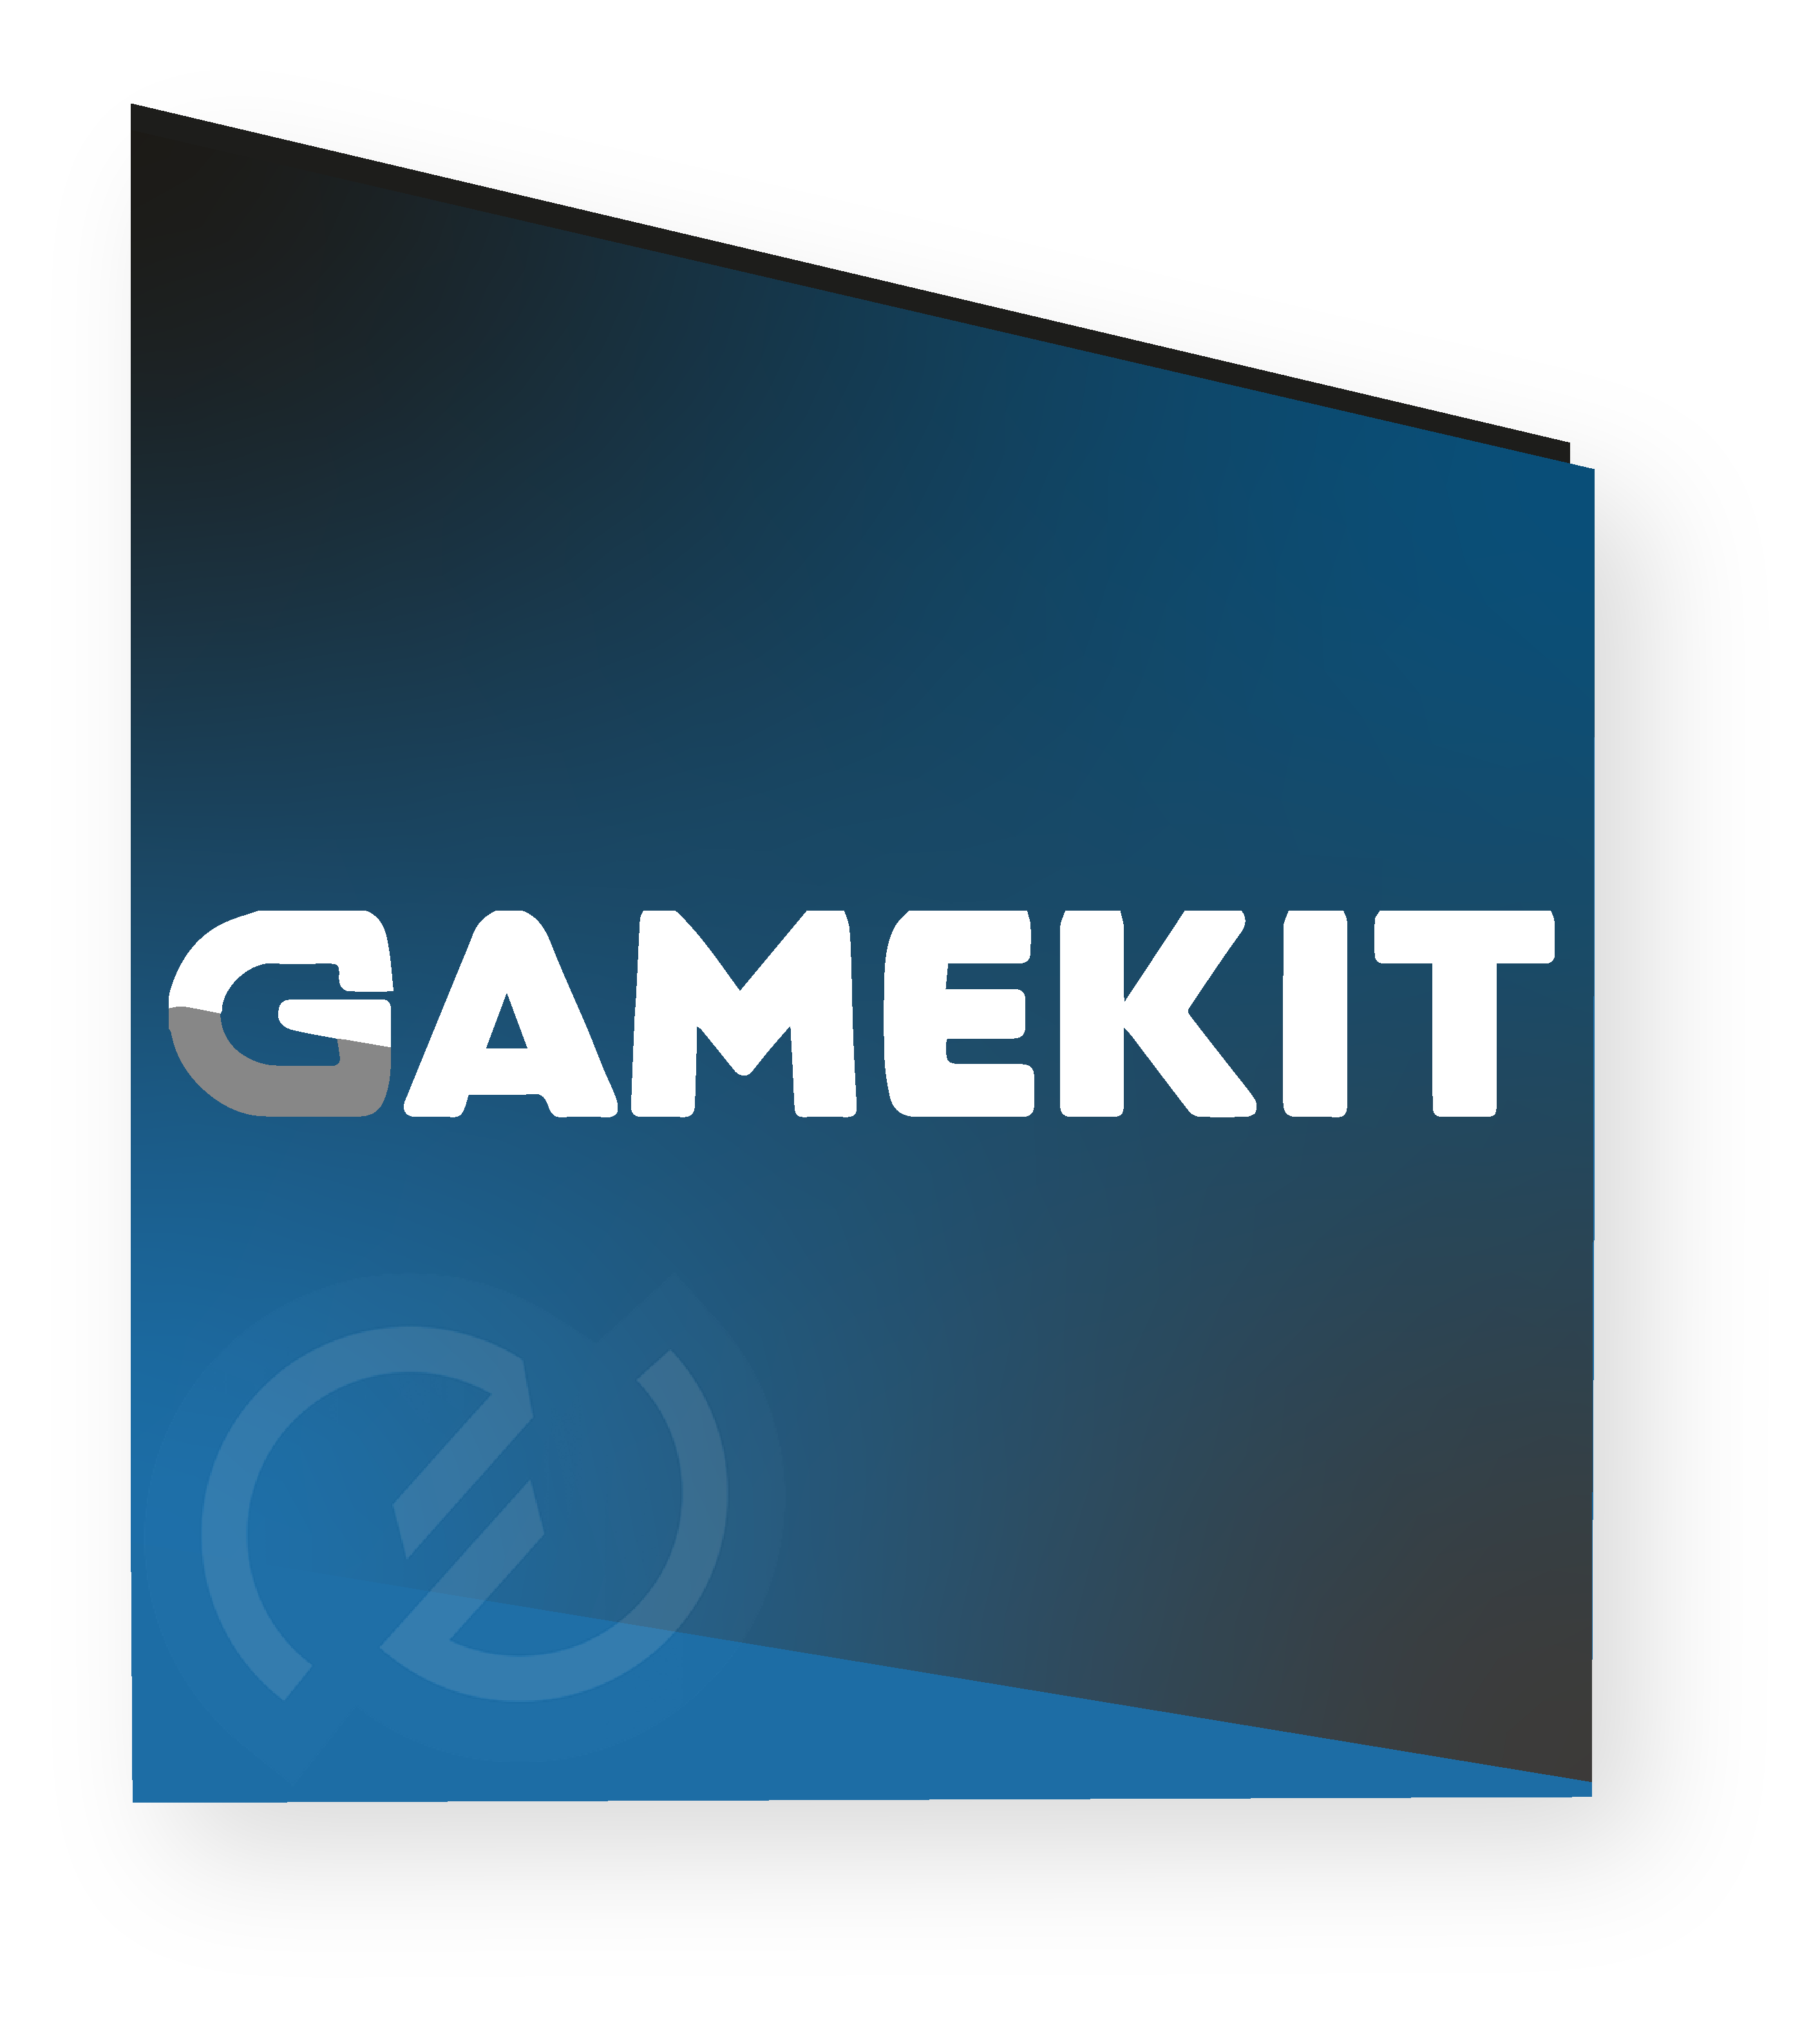 Image logo Gamekit